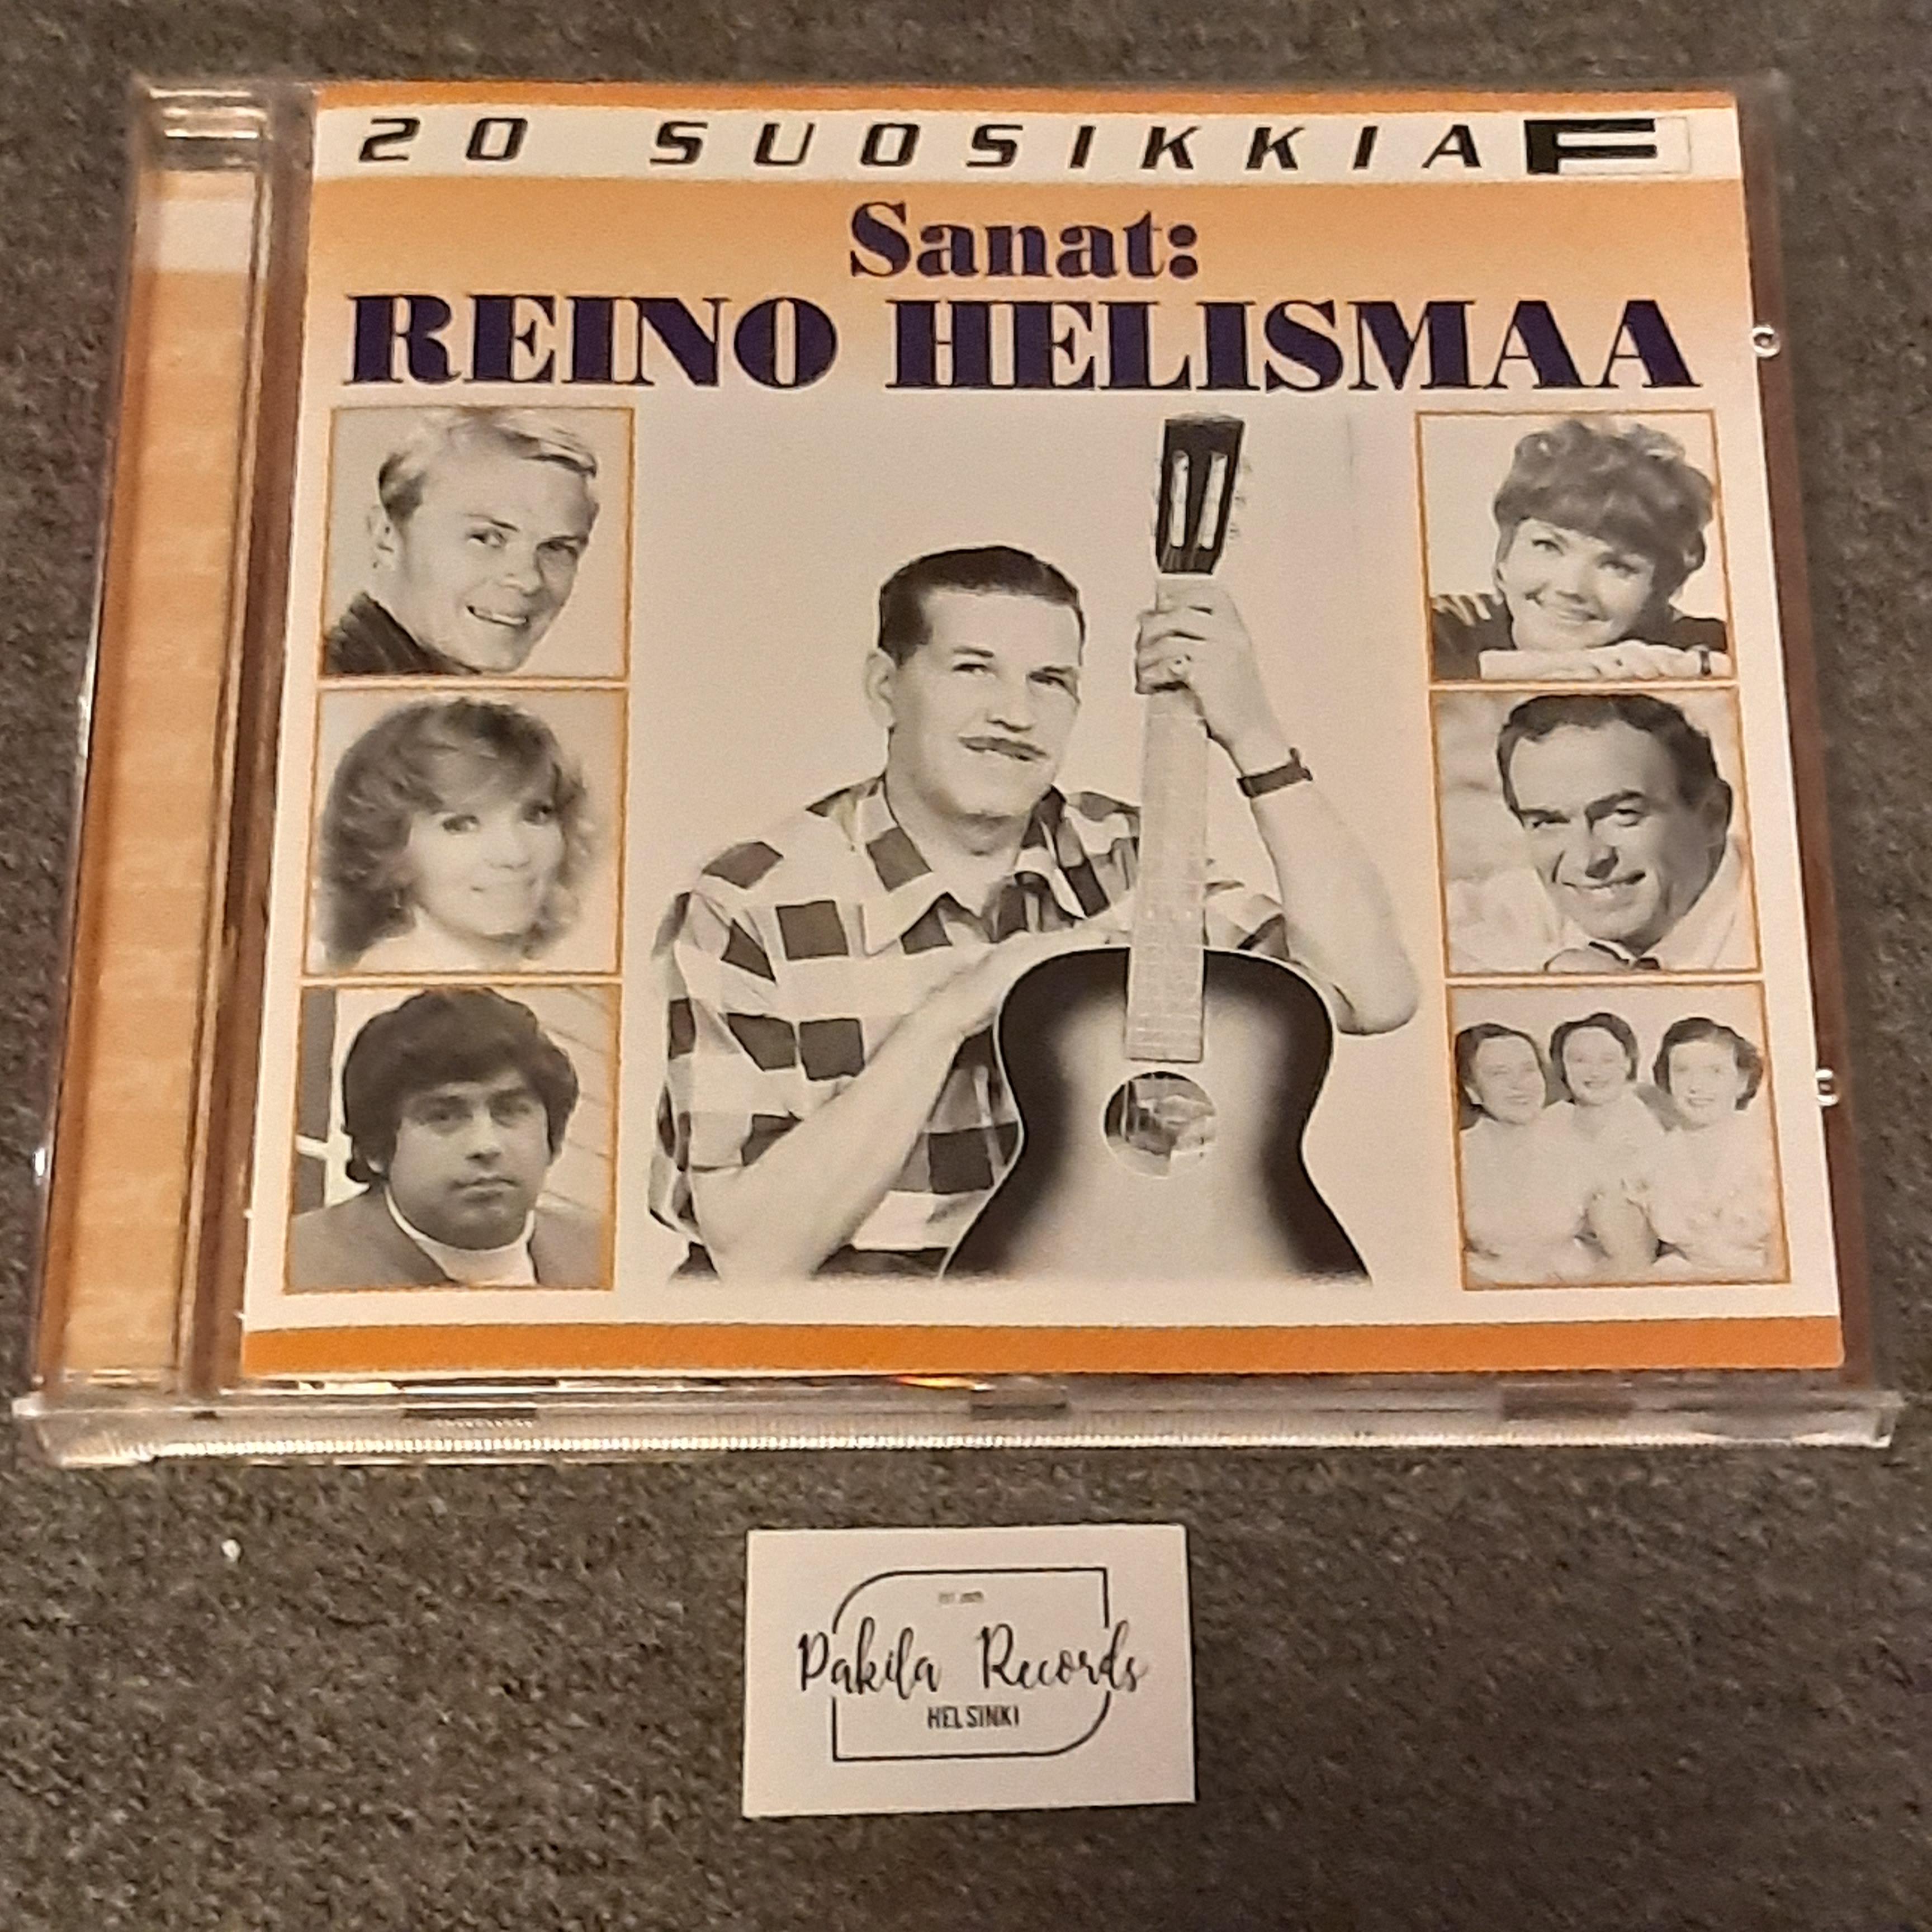 Sanat: Reino Helismaa - CD (käytetty)